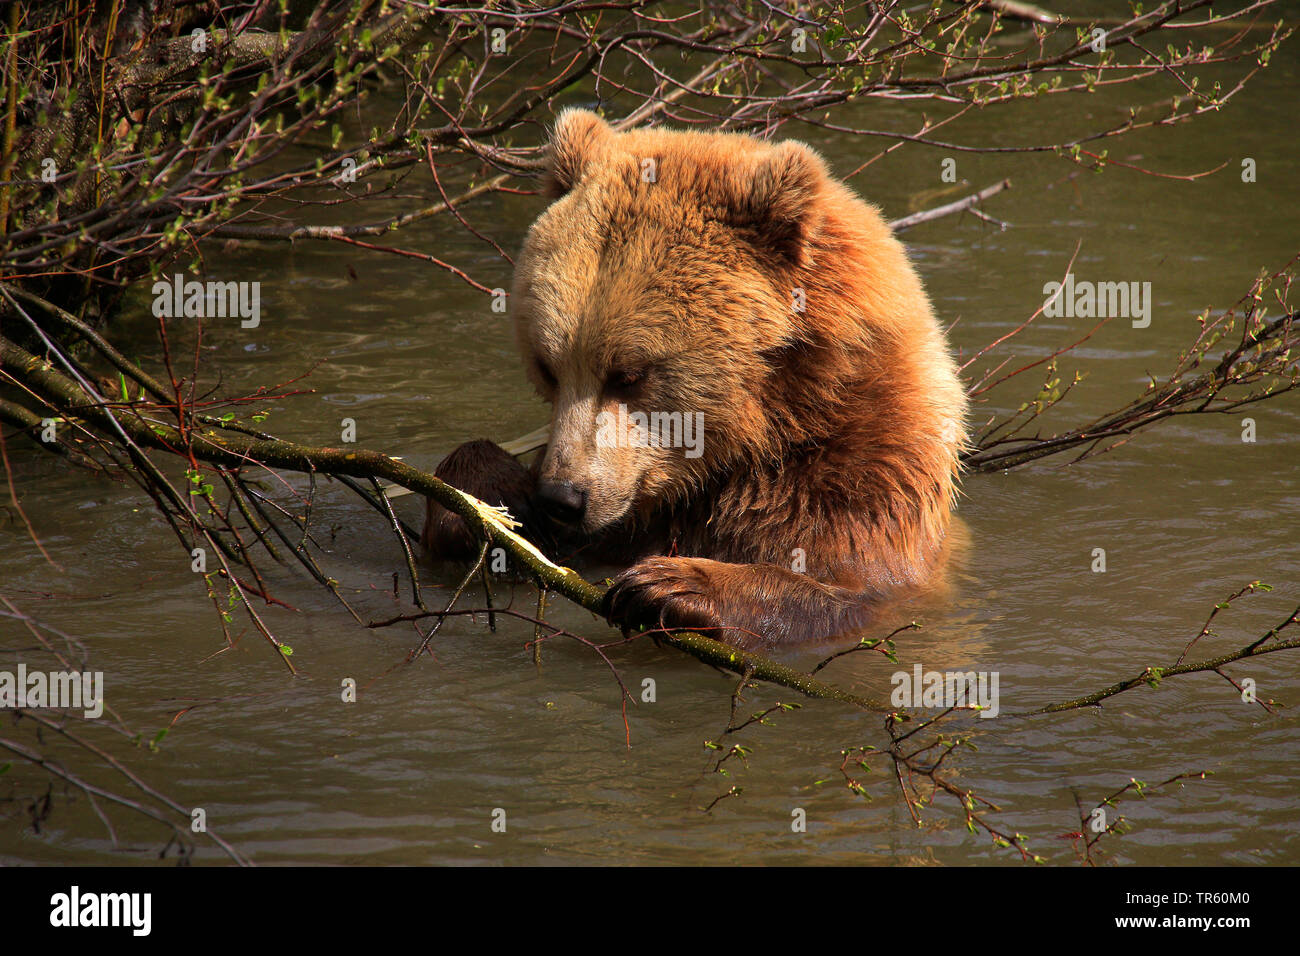 Unione l'orso bruno (Ursus arctos arctos), capretti sopportare seduto in acqua e il taglio in corrispondenza di un ramo, Germania Foto Stock